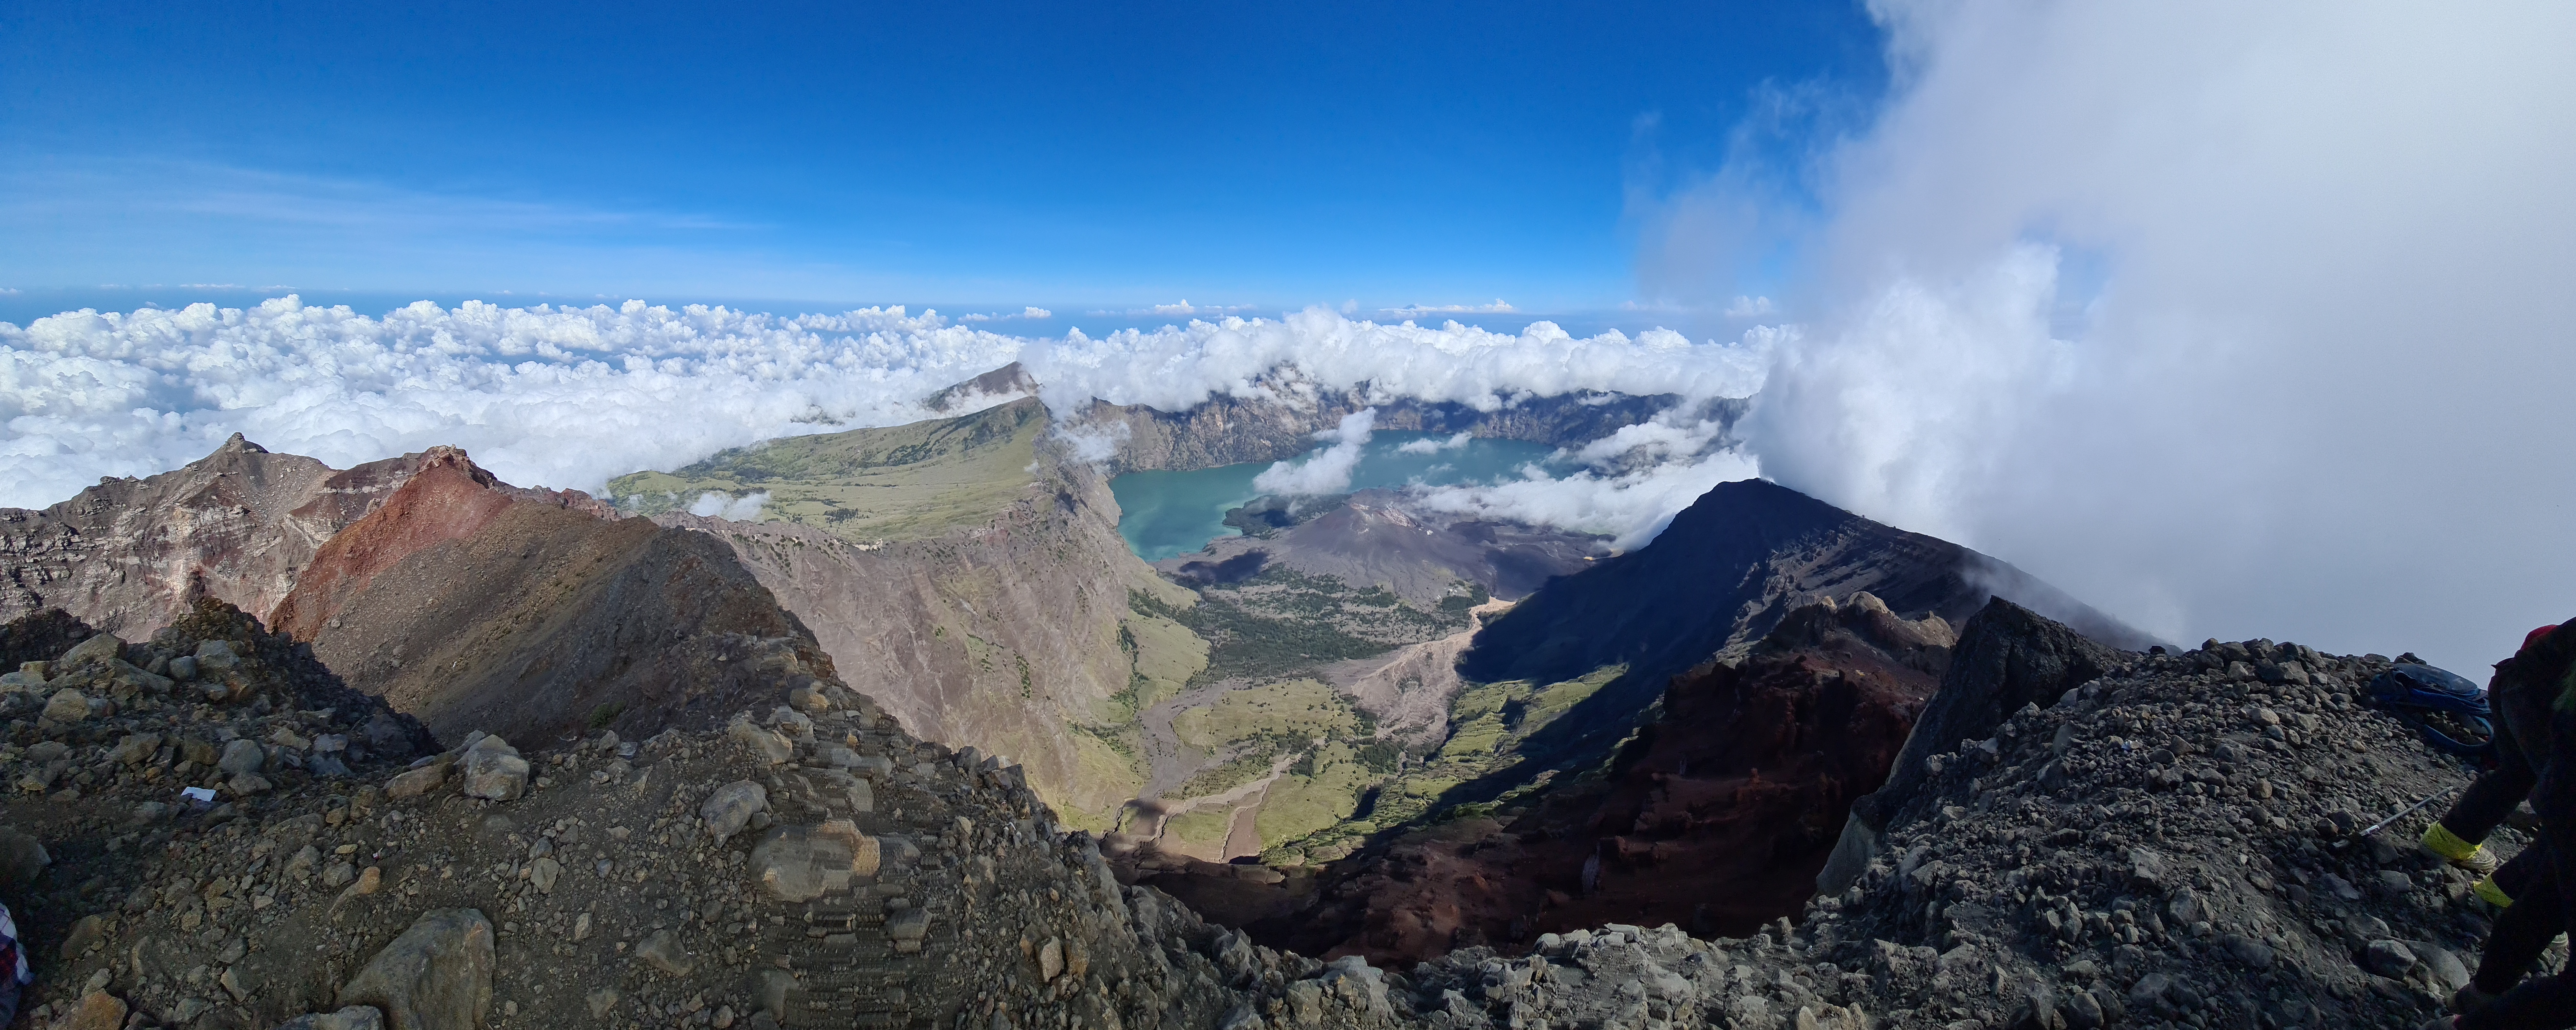 Rinjani 29/64: Dari atas kita dapat melihat pemandangan gunung Barujari dan danau Segara Anak. Pukul 10.00 juga awan mulai naik